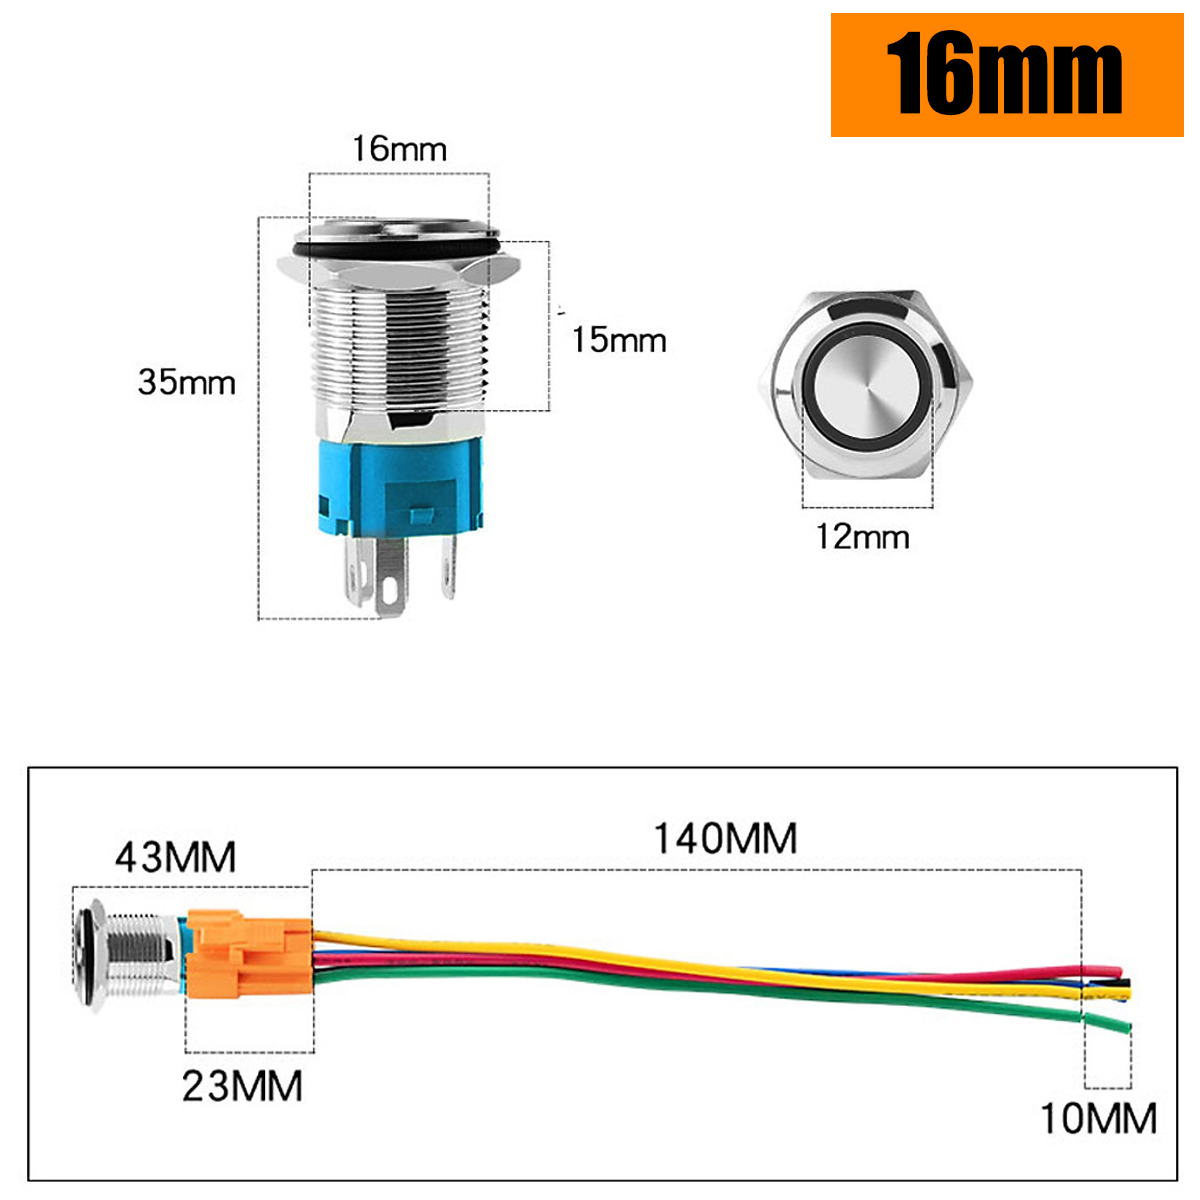 Nút công tắc, Nút nguồn Nhấn nhả, Nhấn đề 16mm (3-6V, 12-24V, 110-220V) Vỏ INOX chống nước